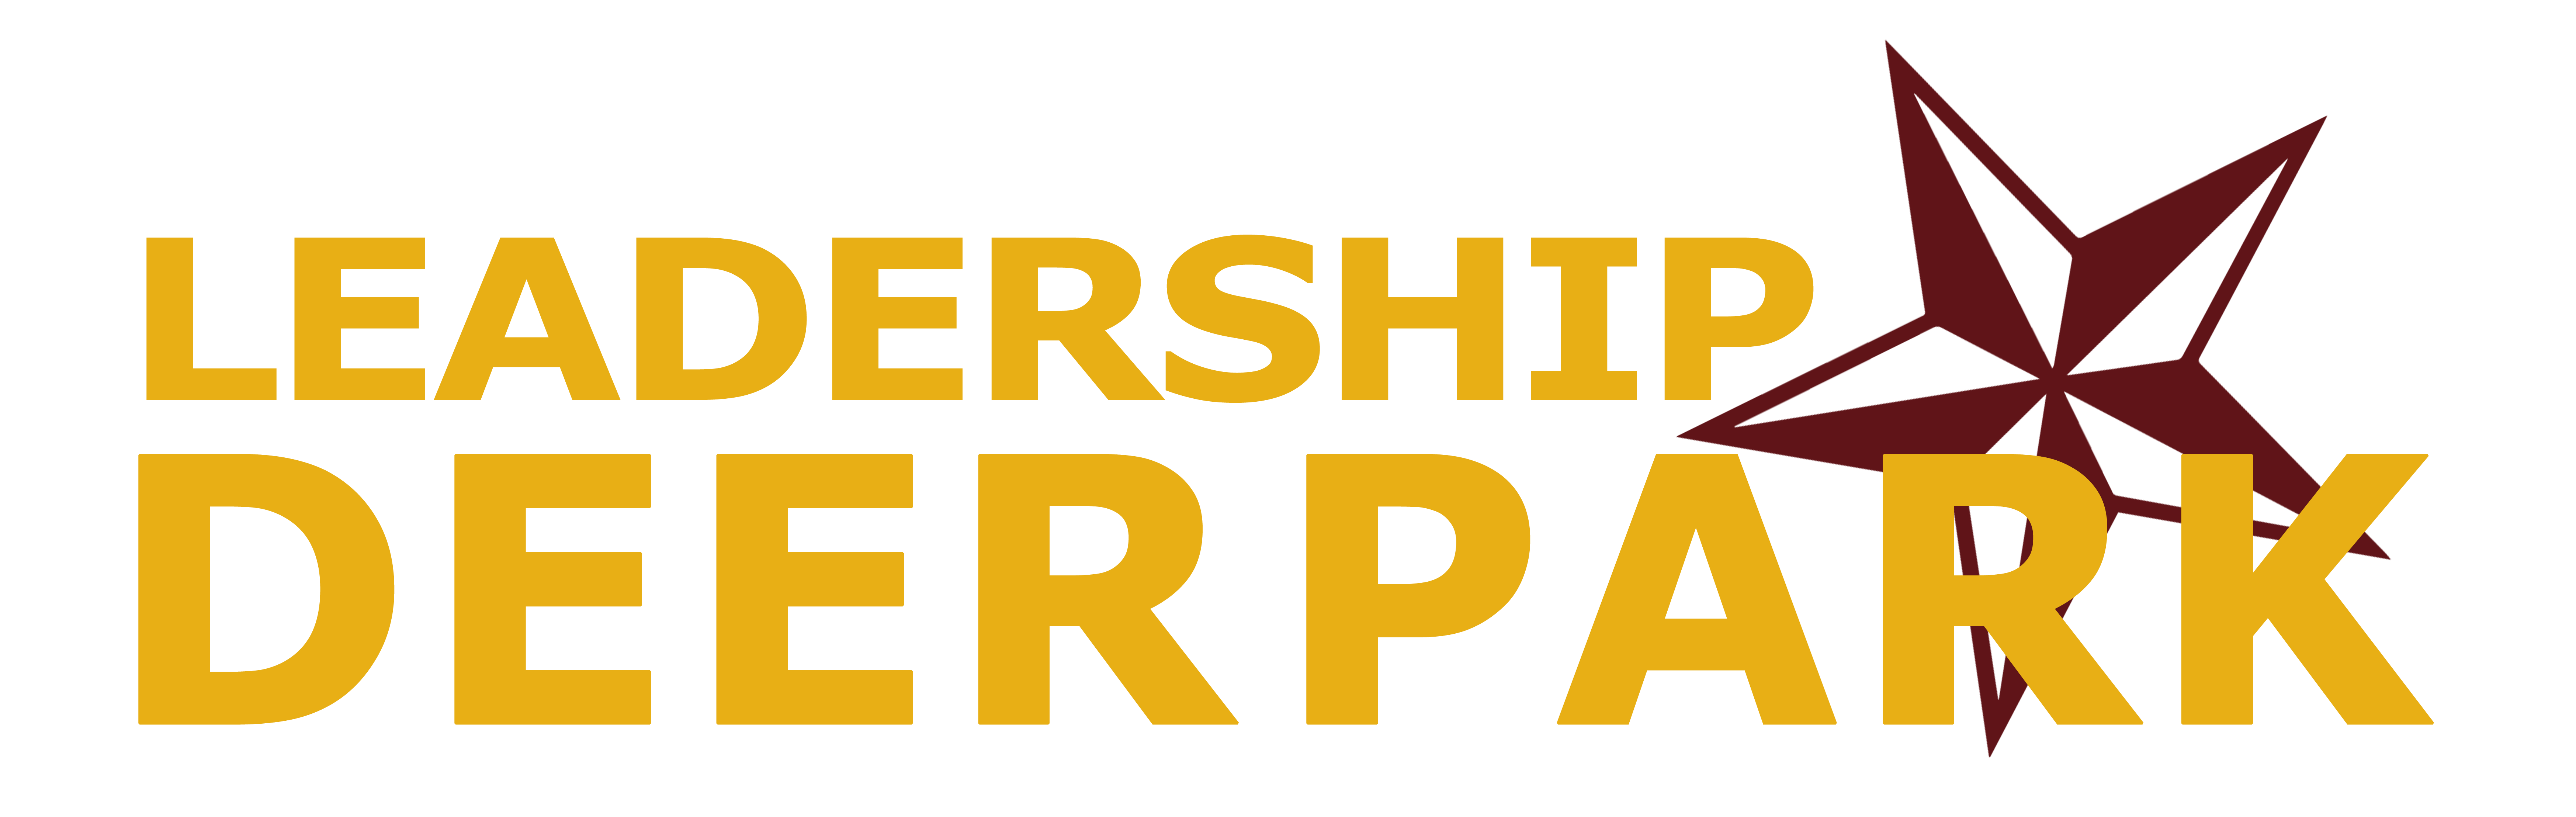 Deer Park Chamber Leadership Logo - Rev 2 Final - Transparent for Light Background - DCA360